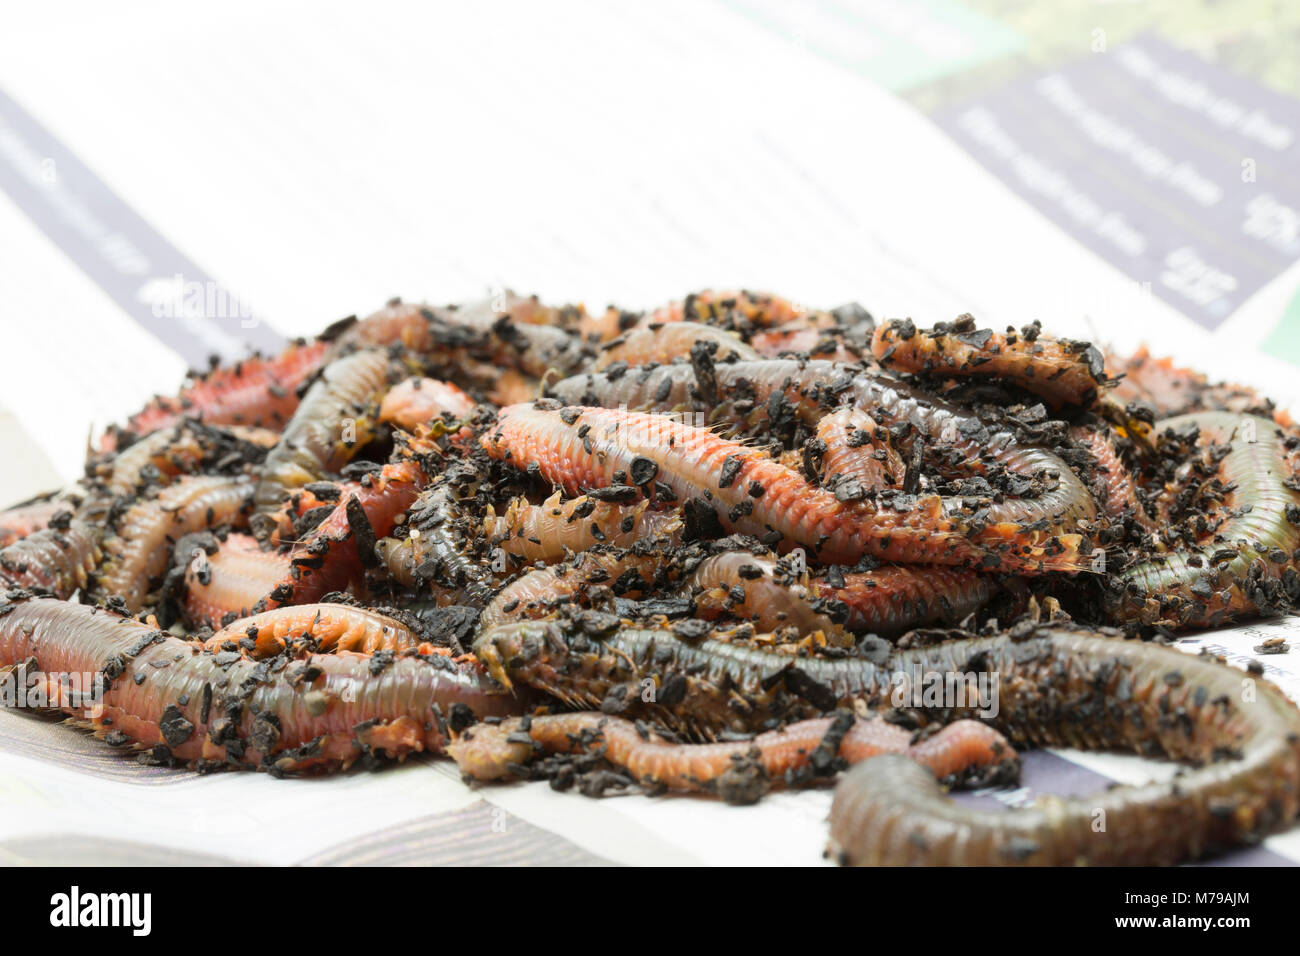 König ragworm Attila virens, Dorset UK. Der König ragworm ist ein beliebter Köder Zum Angeln im Meer. Die Würmer haben starke Zange und kann über einen Fuß lang wachsen Stockfoto